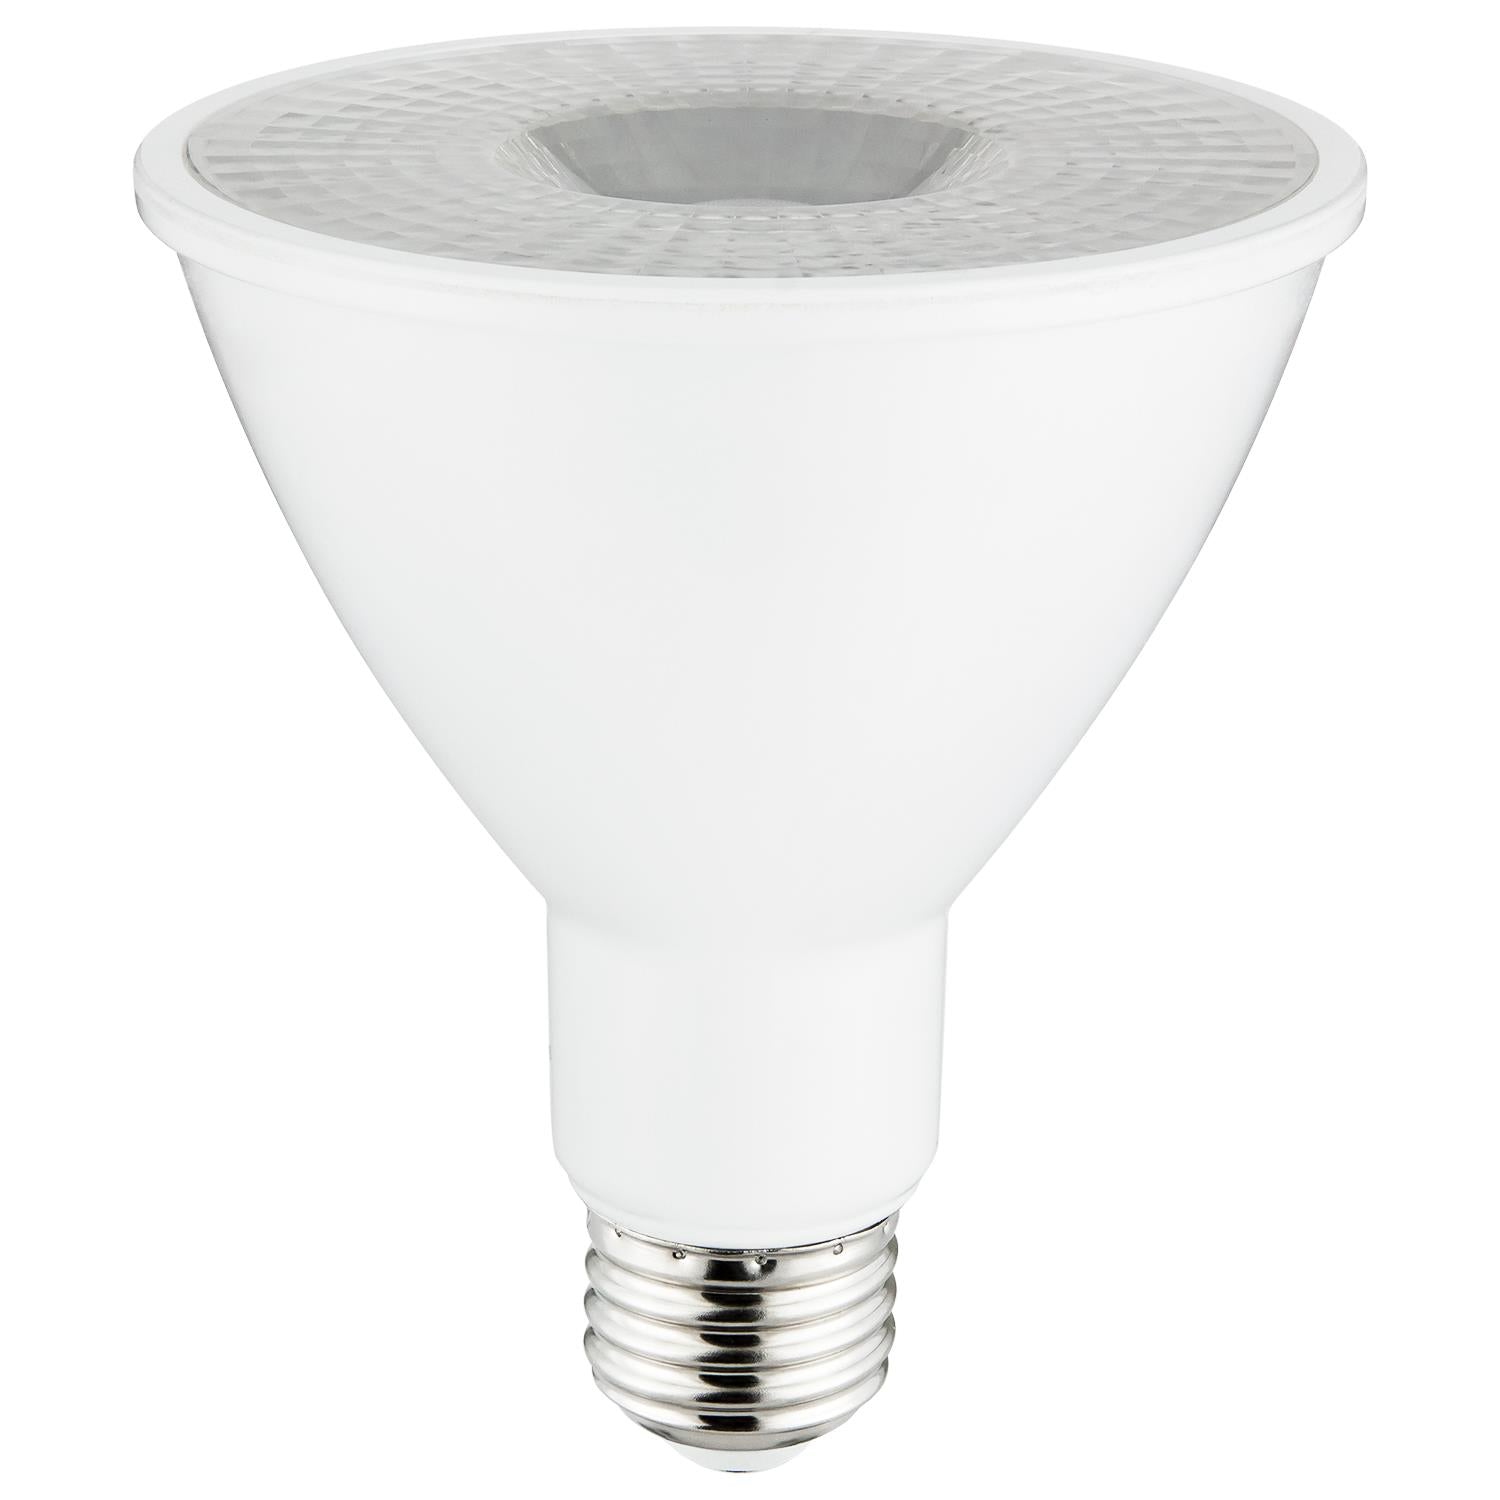 SUNLITE 10w LED Par30 Long Neck Flood 35 E26 Medium Base Warm White Light Bulb